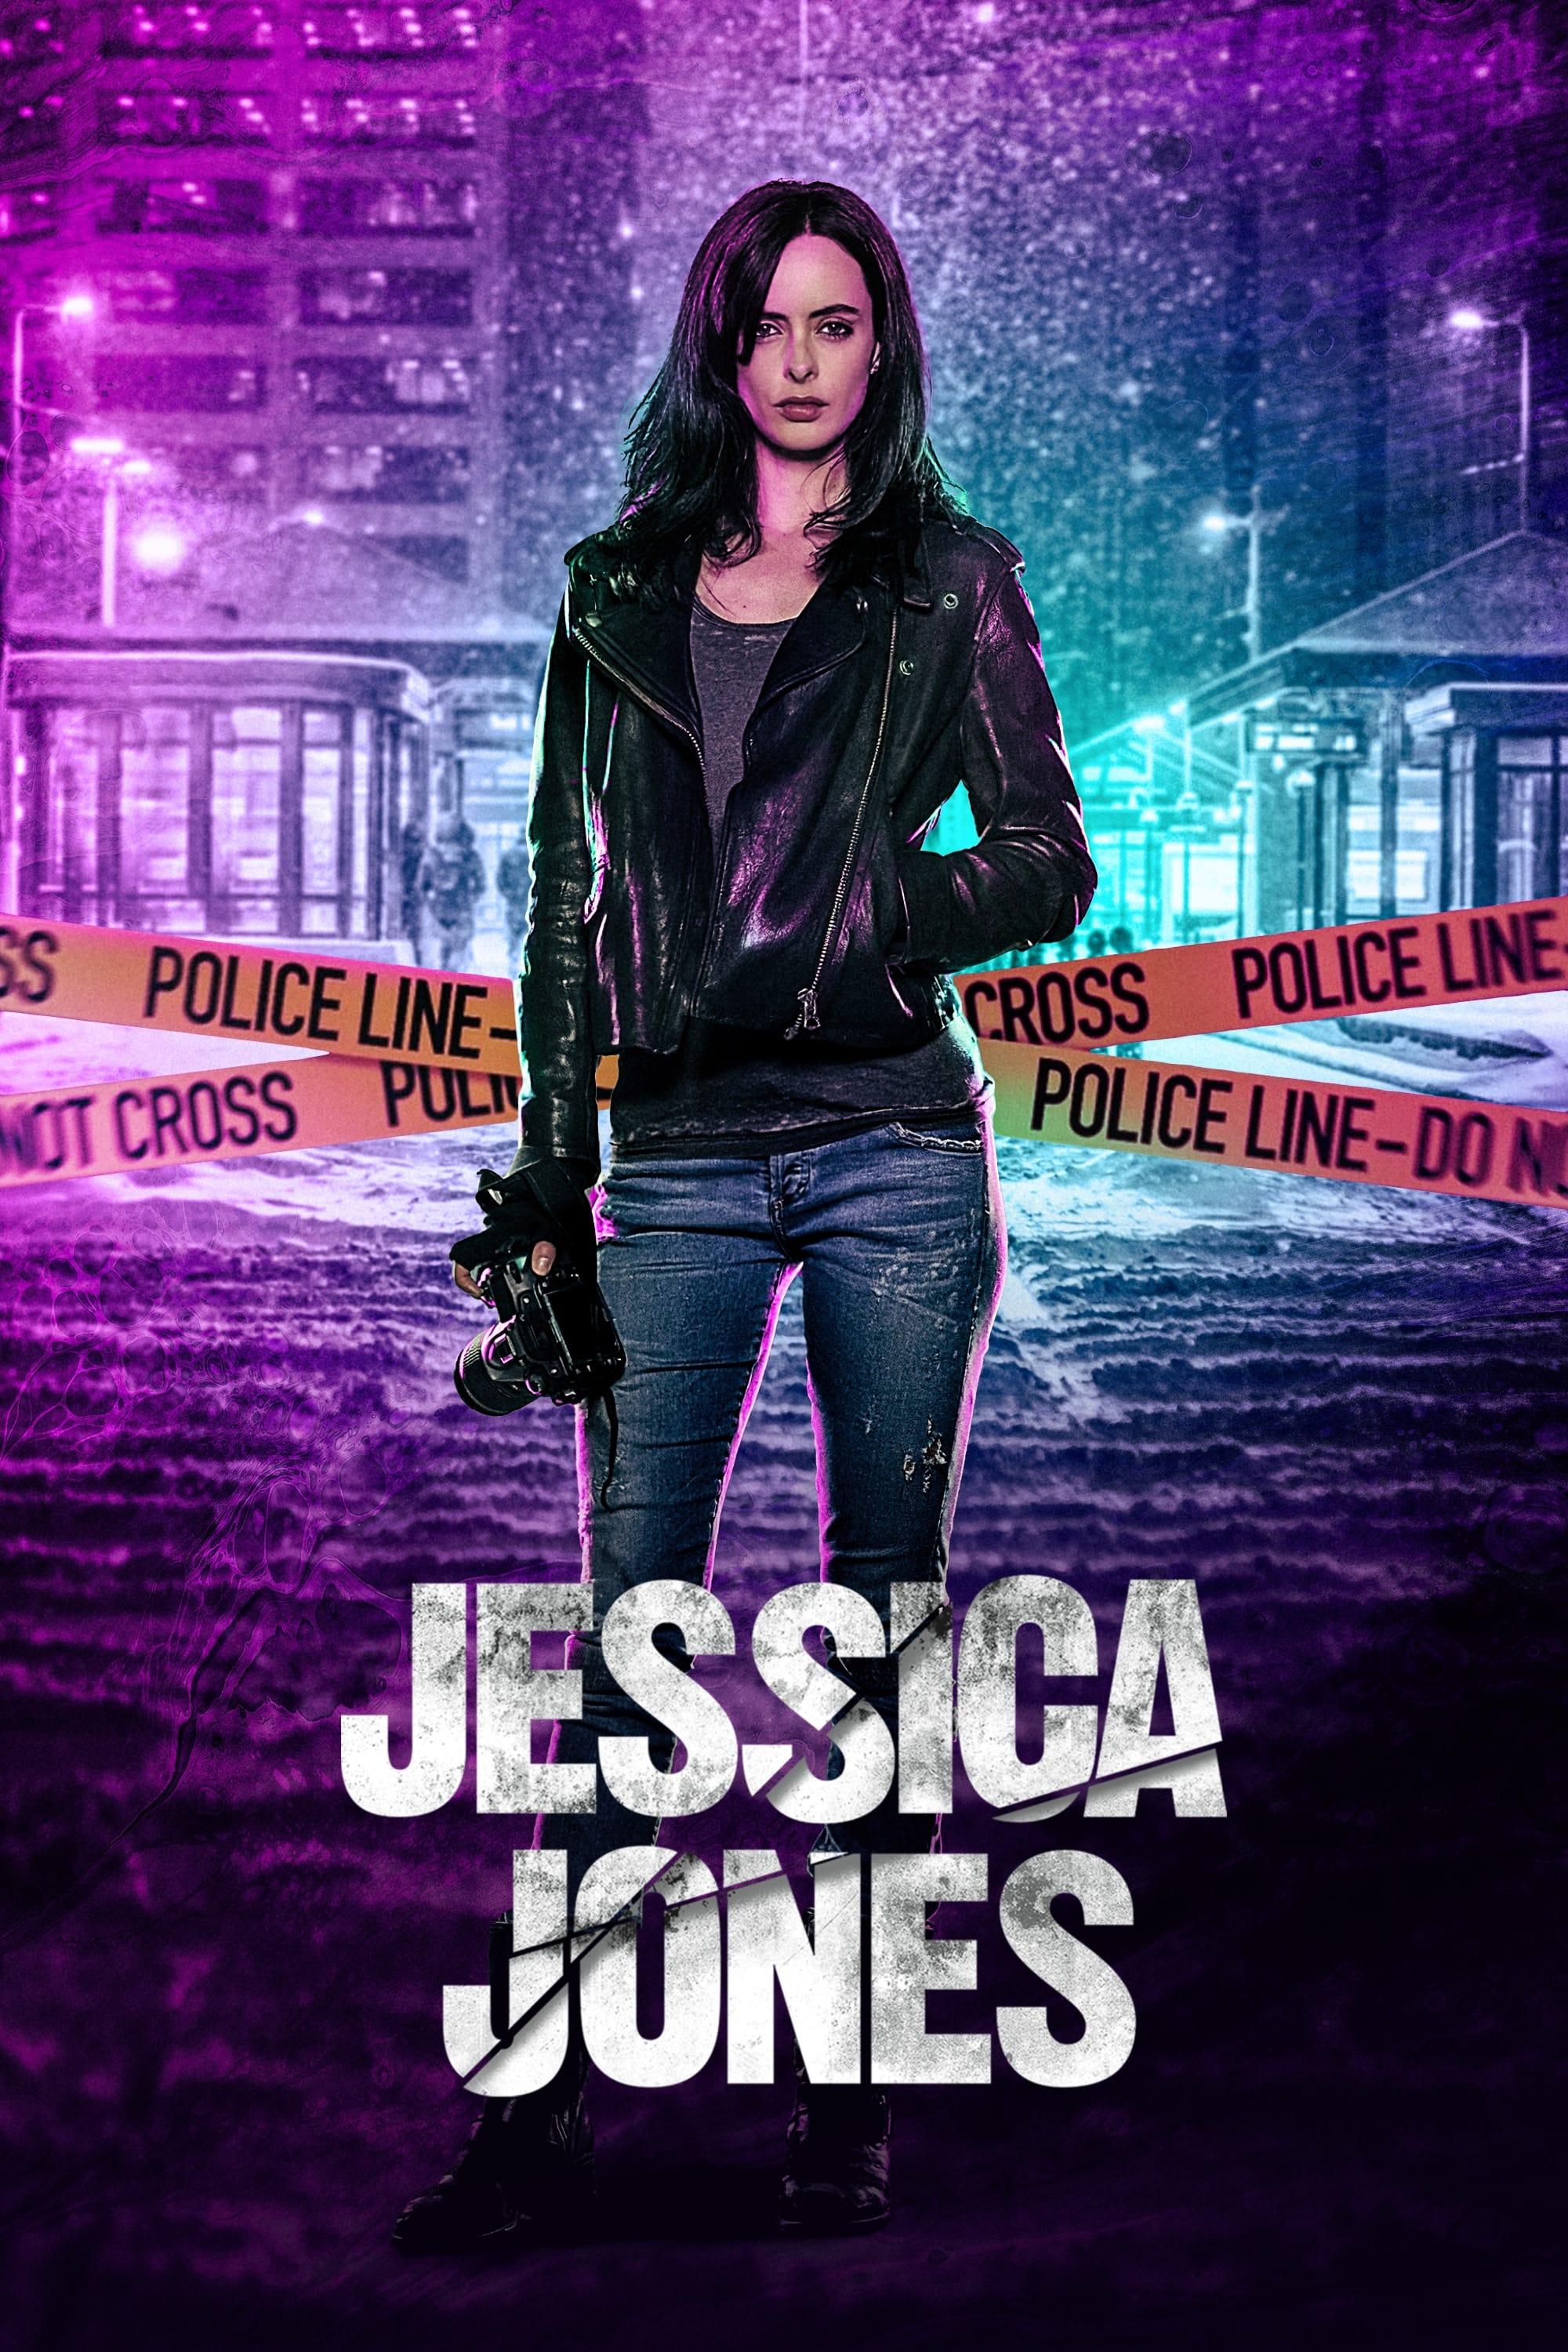 Marvel's Jessica Jones poster